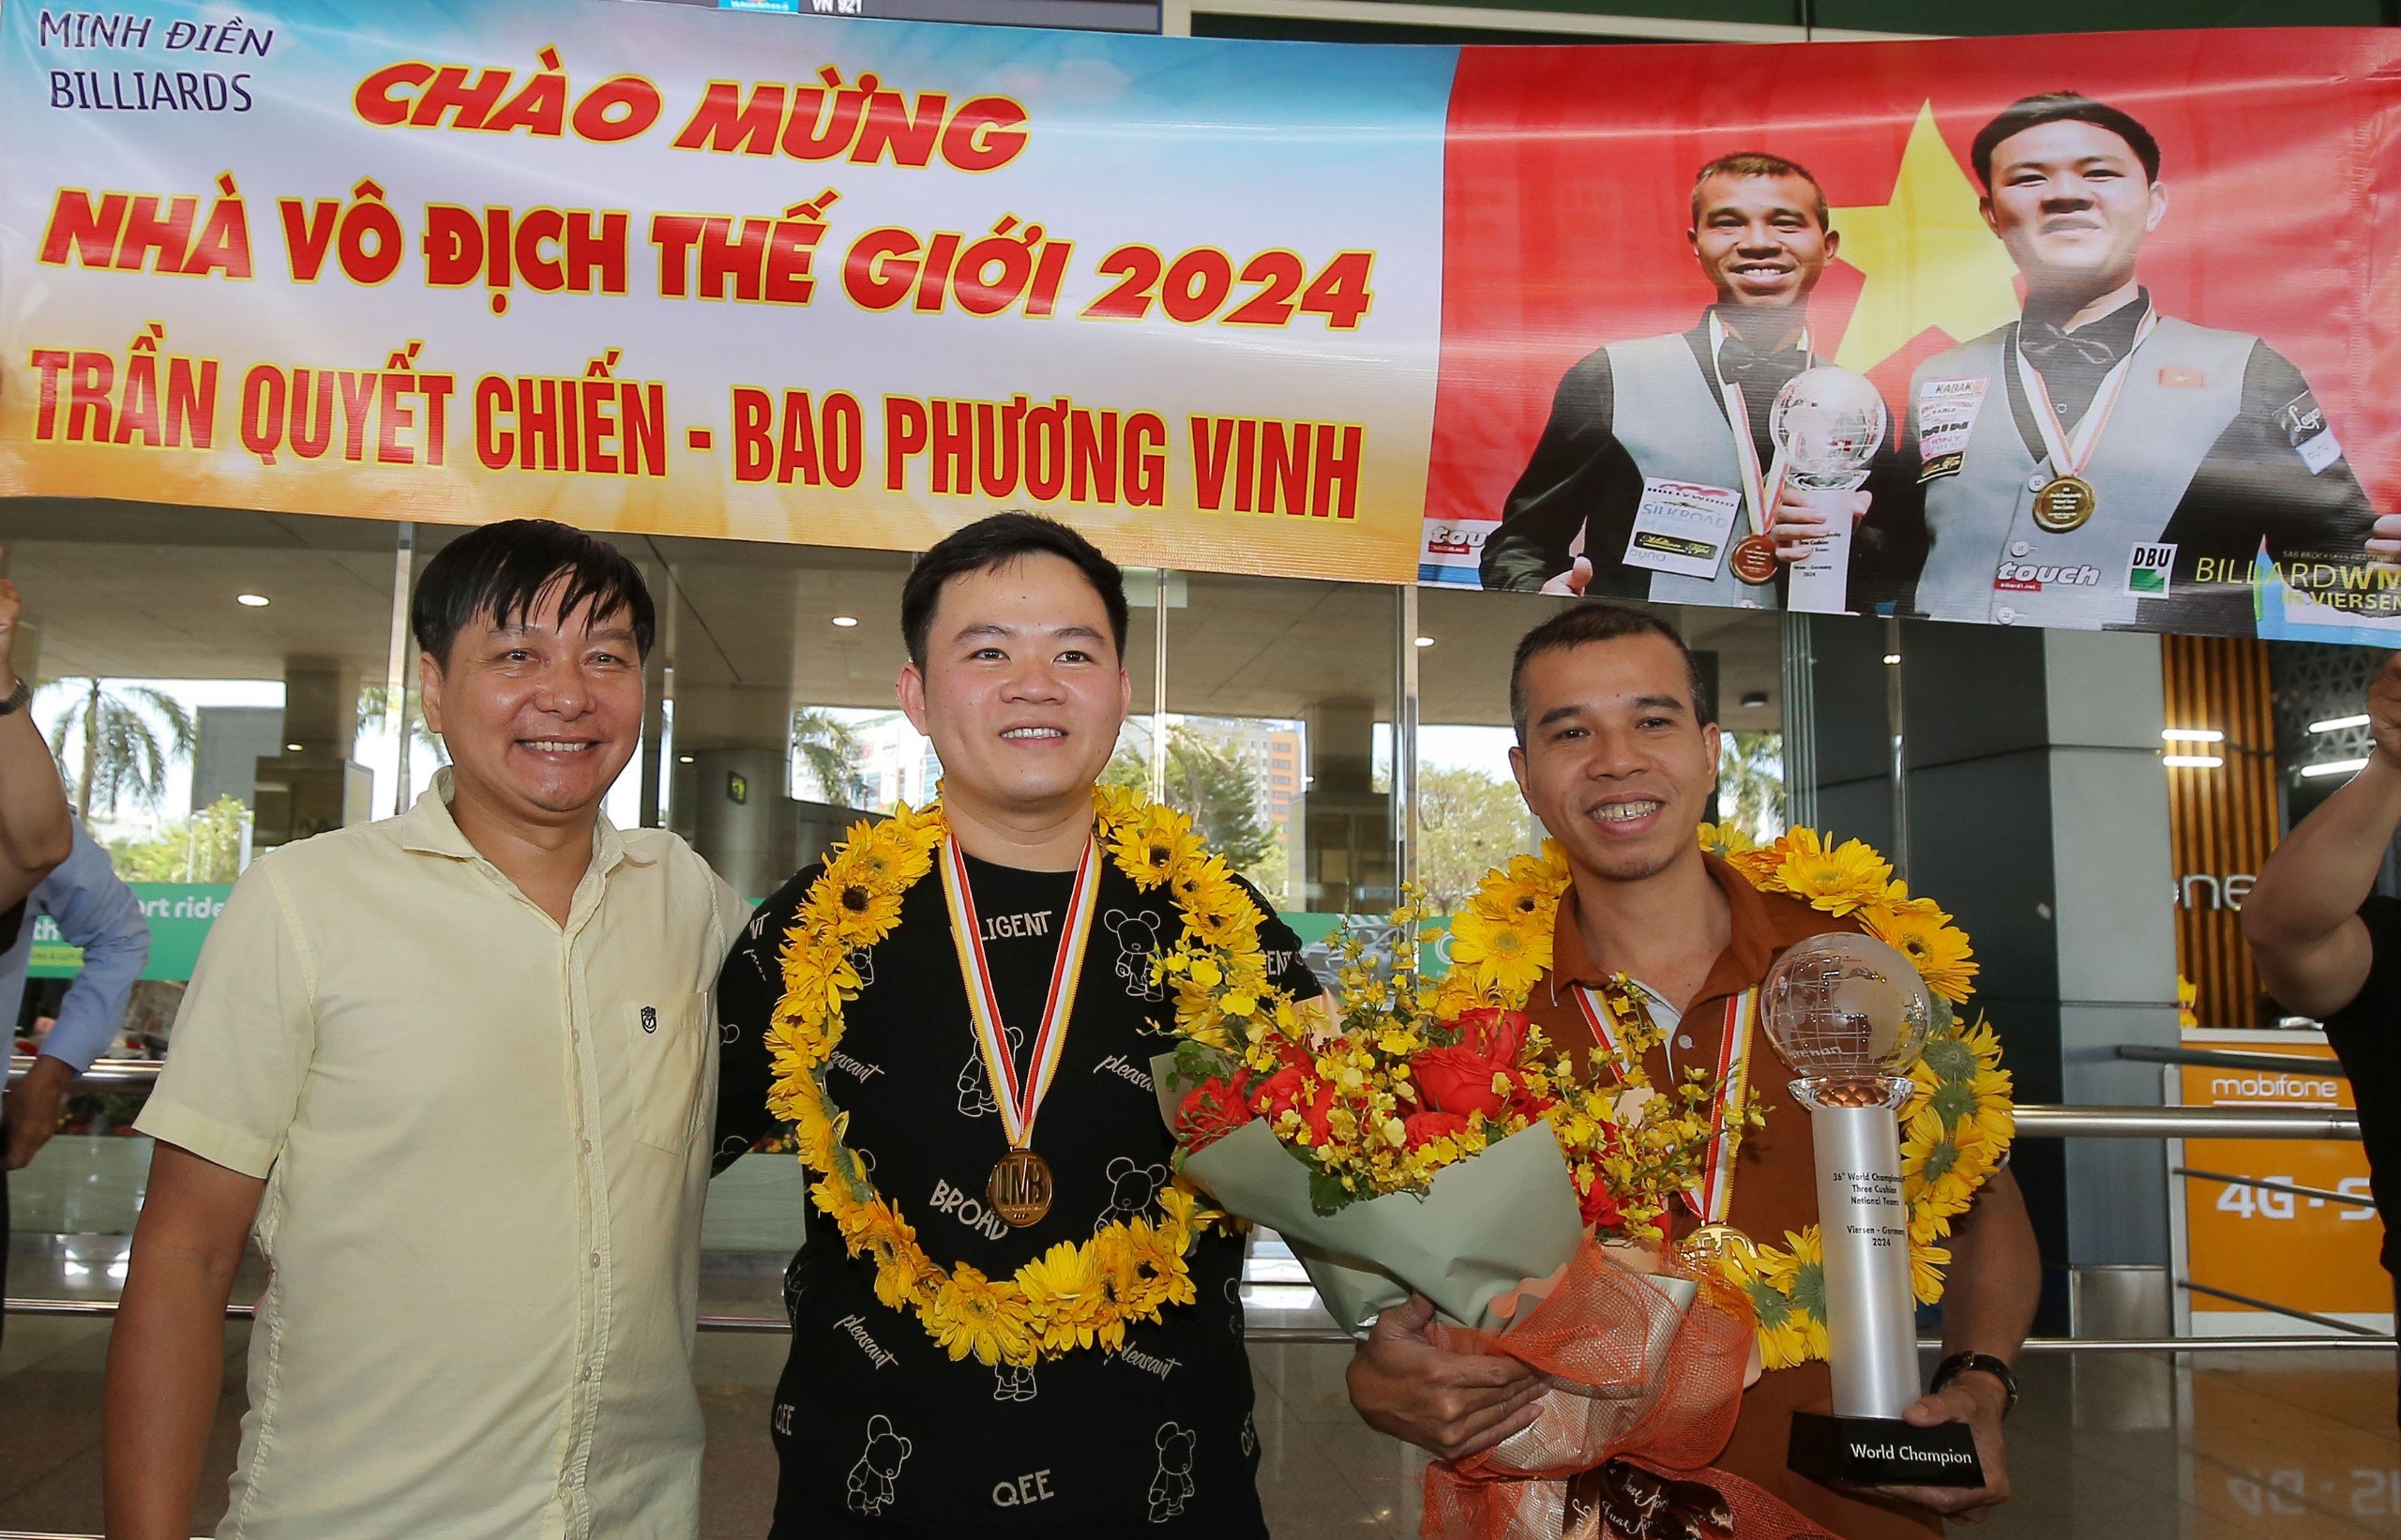 Hai nhà vô địch thế giới Trần Quyết Chiến và Bao Phương Vinh được chào đón rất nồng nhiệt- Ảnh 16.